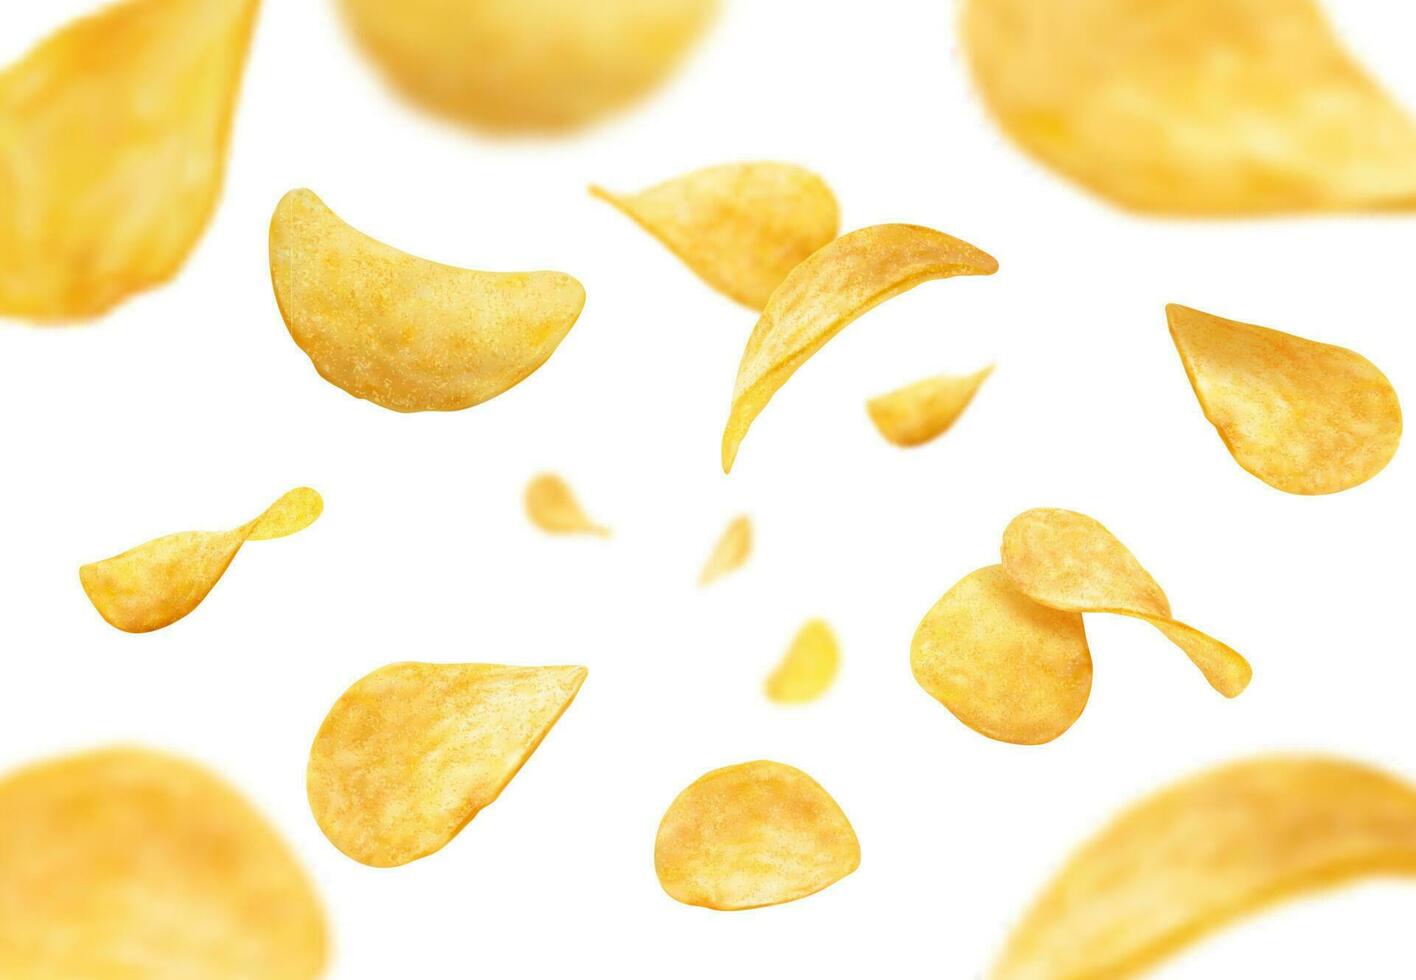 fliegend und fallen knusprig wellig Kartoffel Chips vektor